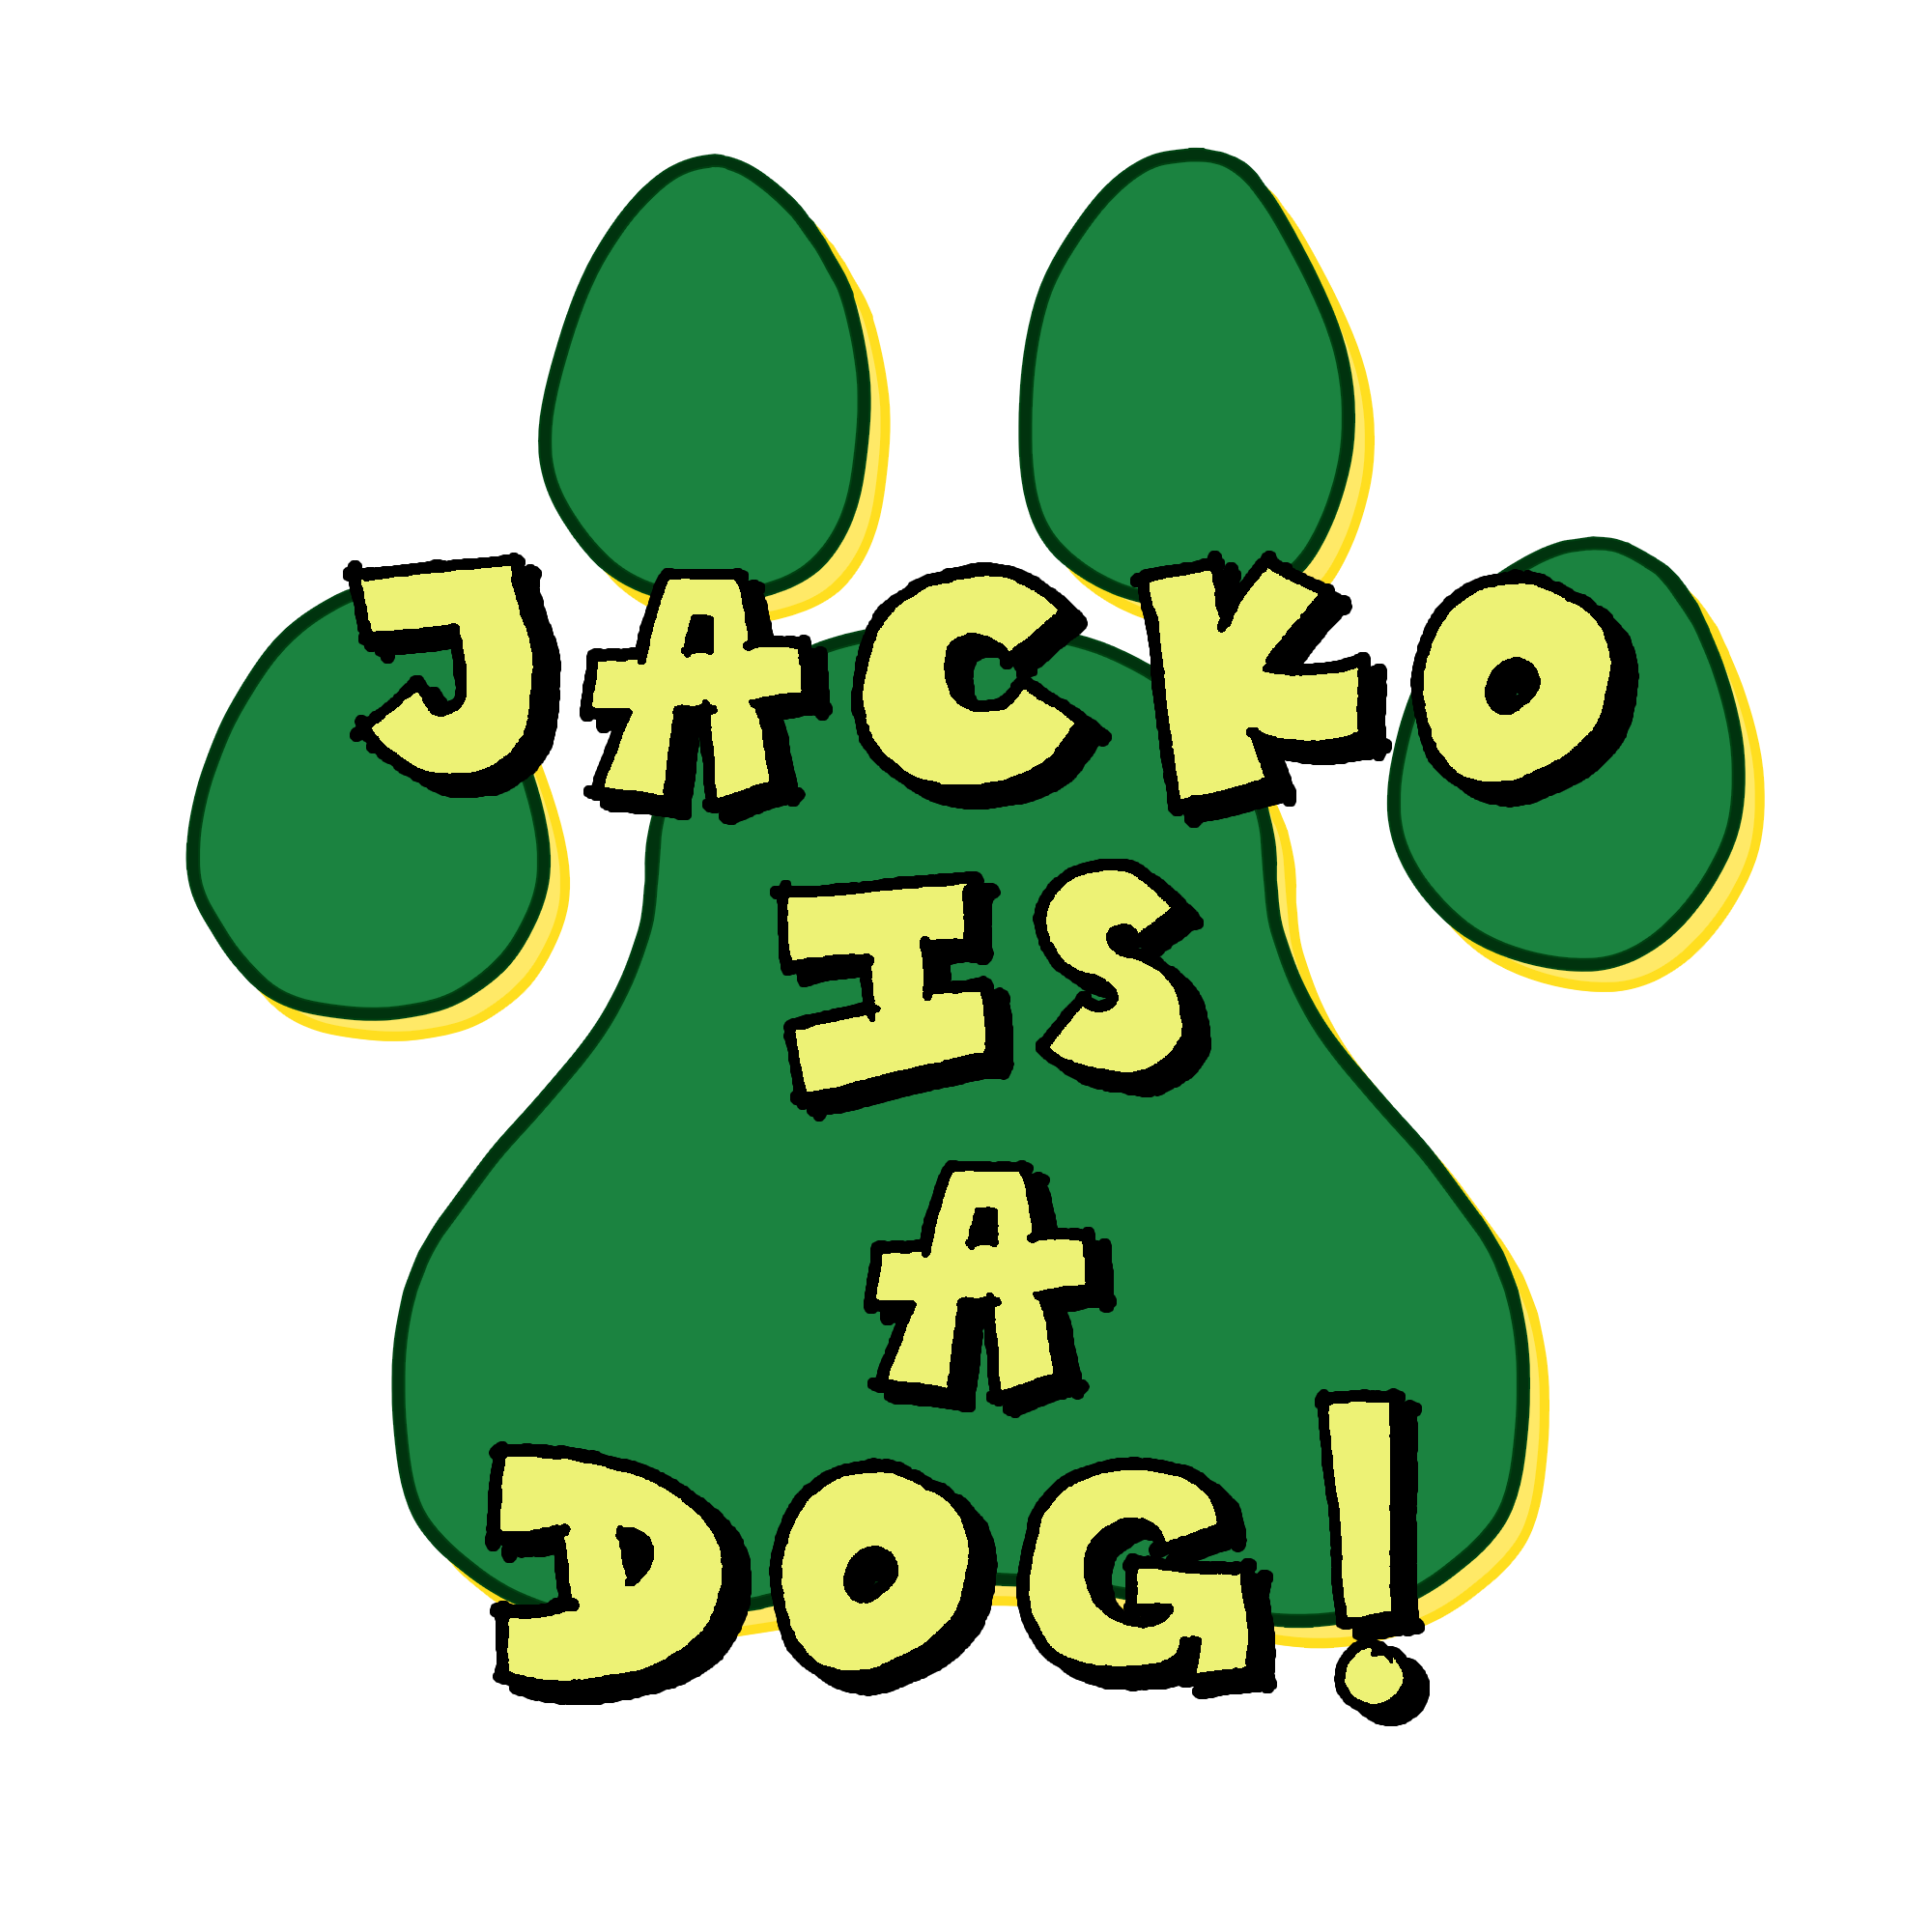 Jacko is a Dog